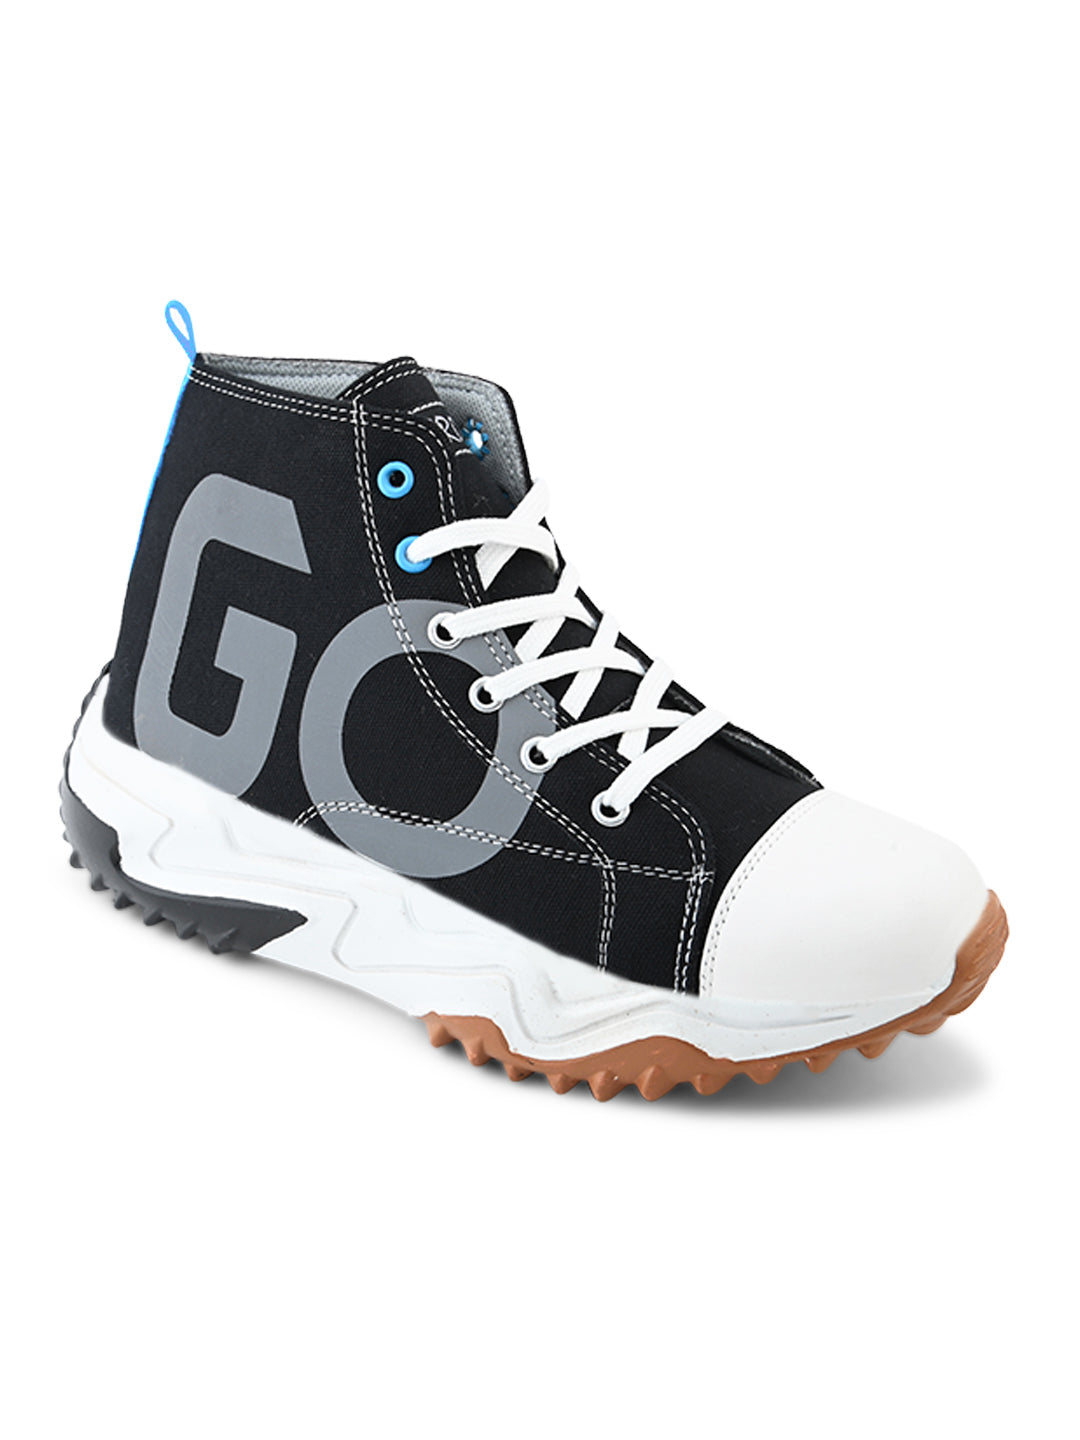 GO - RADIUM Chunky Premium Boot. (131-BLU)